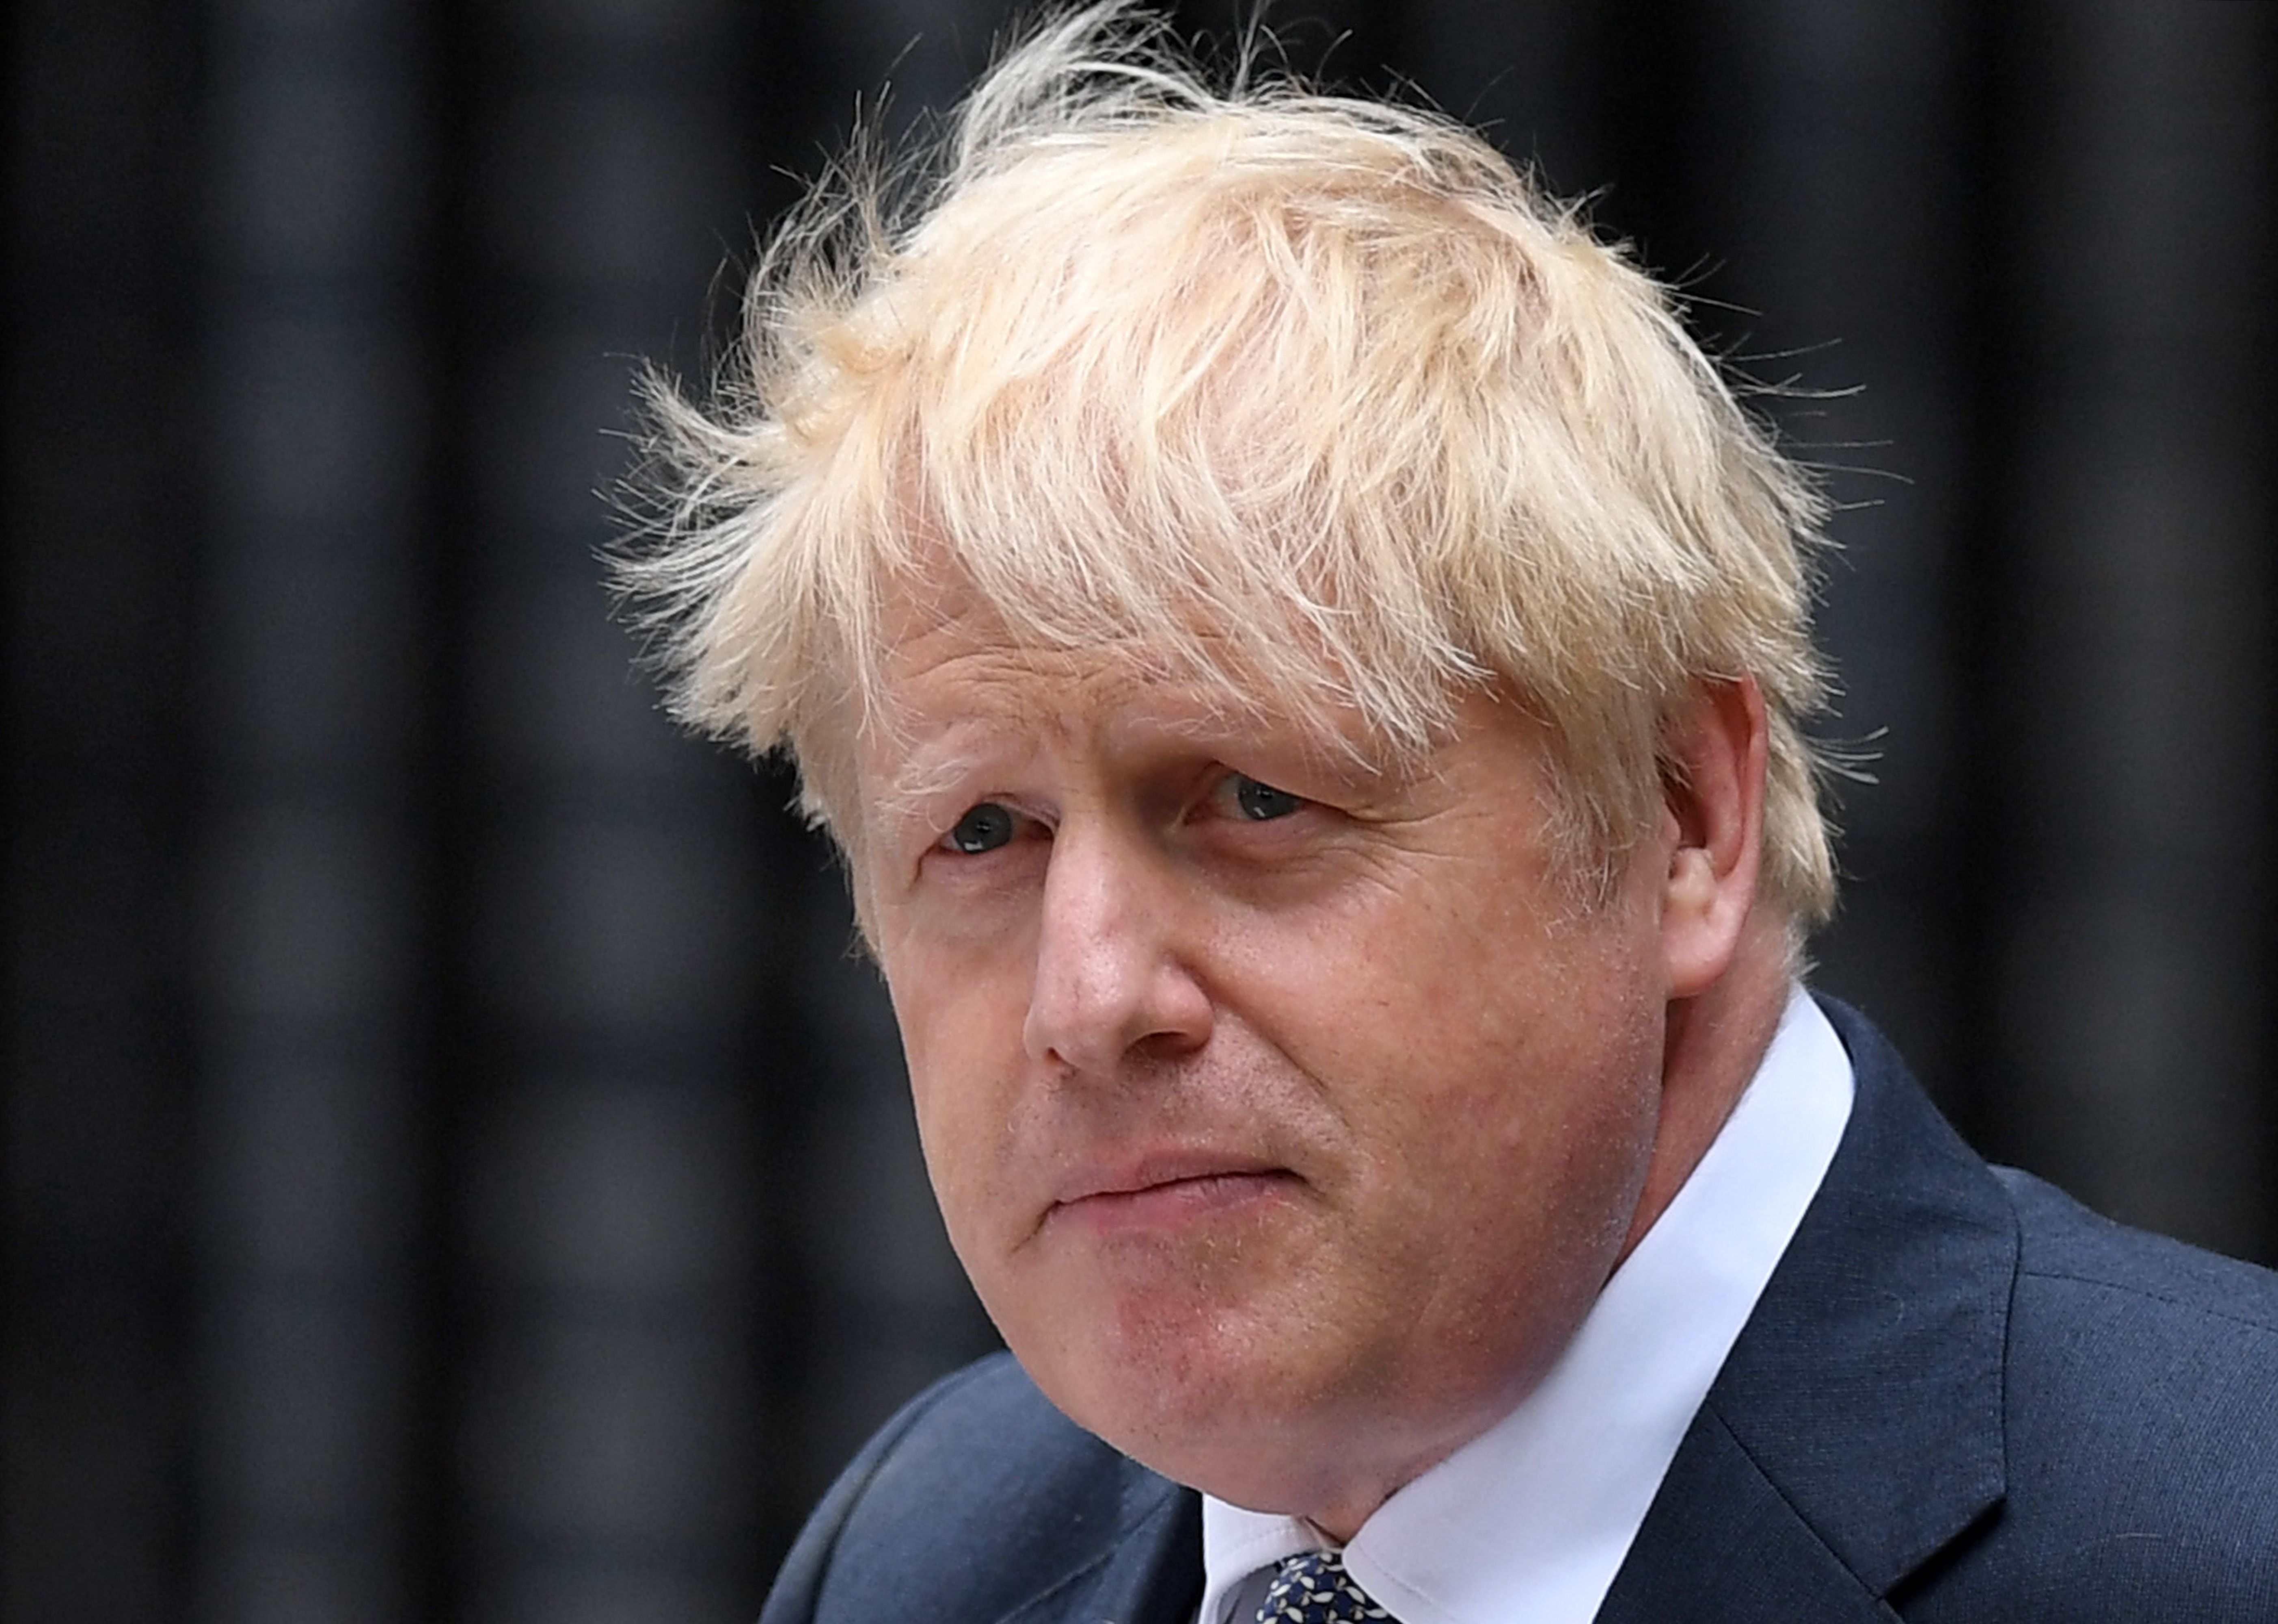 Boris Johnson hace un anuncio afuera de 10 Downing Street en el centro de Londres el 7 de julio de 202. El Primer Ministro deja el cargo luego de tres años.  (Foto Prensa Libre: AFP)